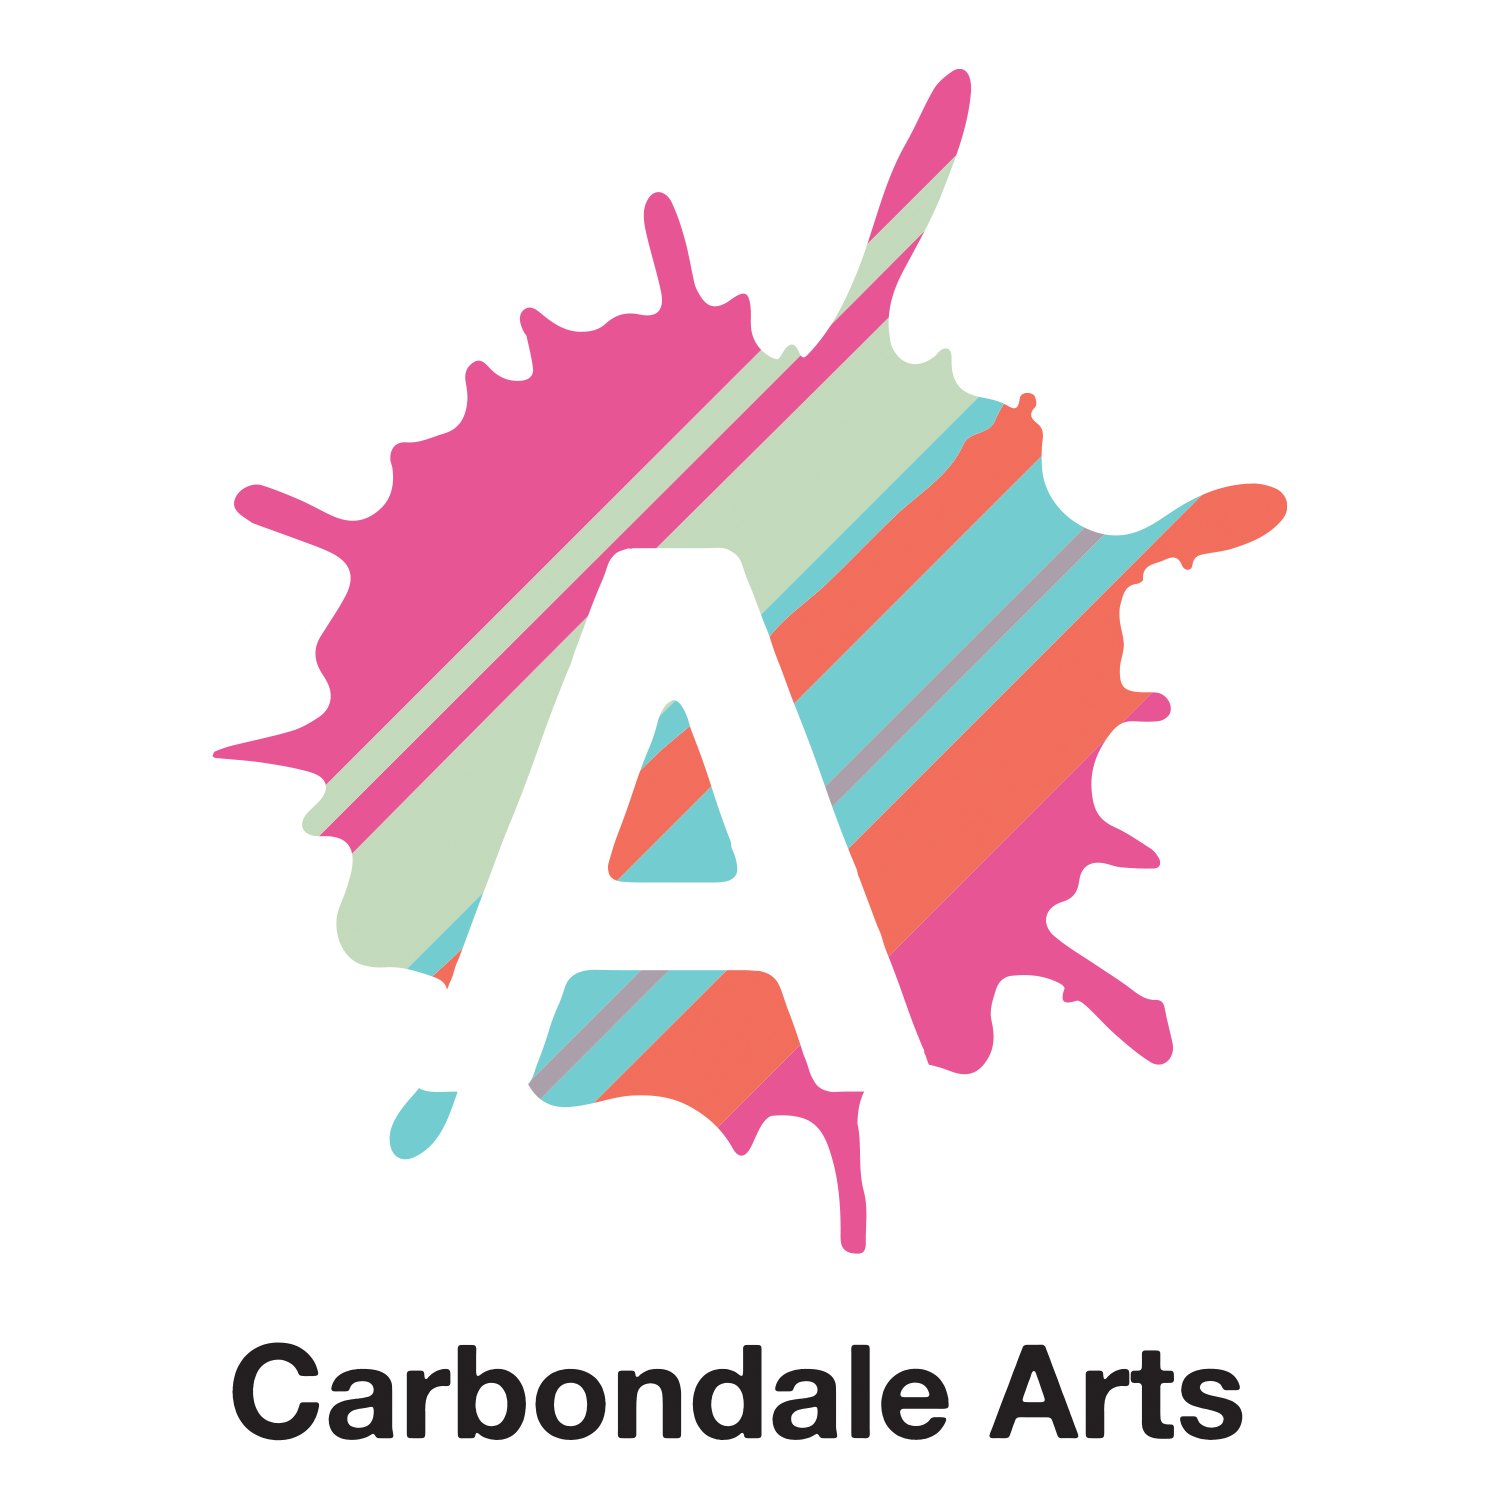 Carbondale Arts